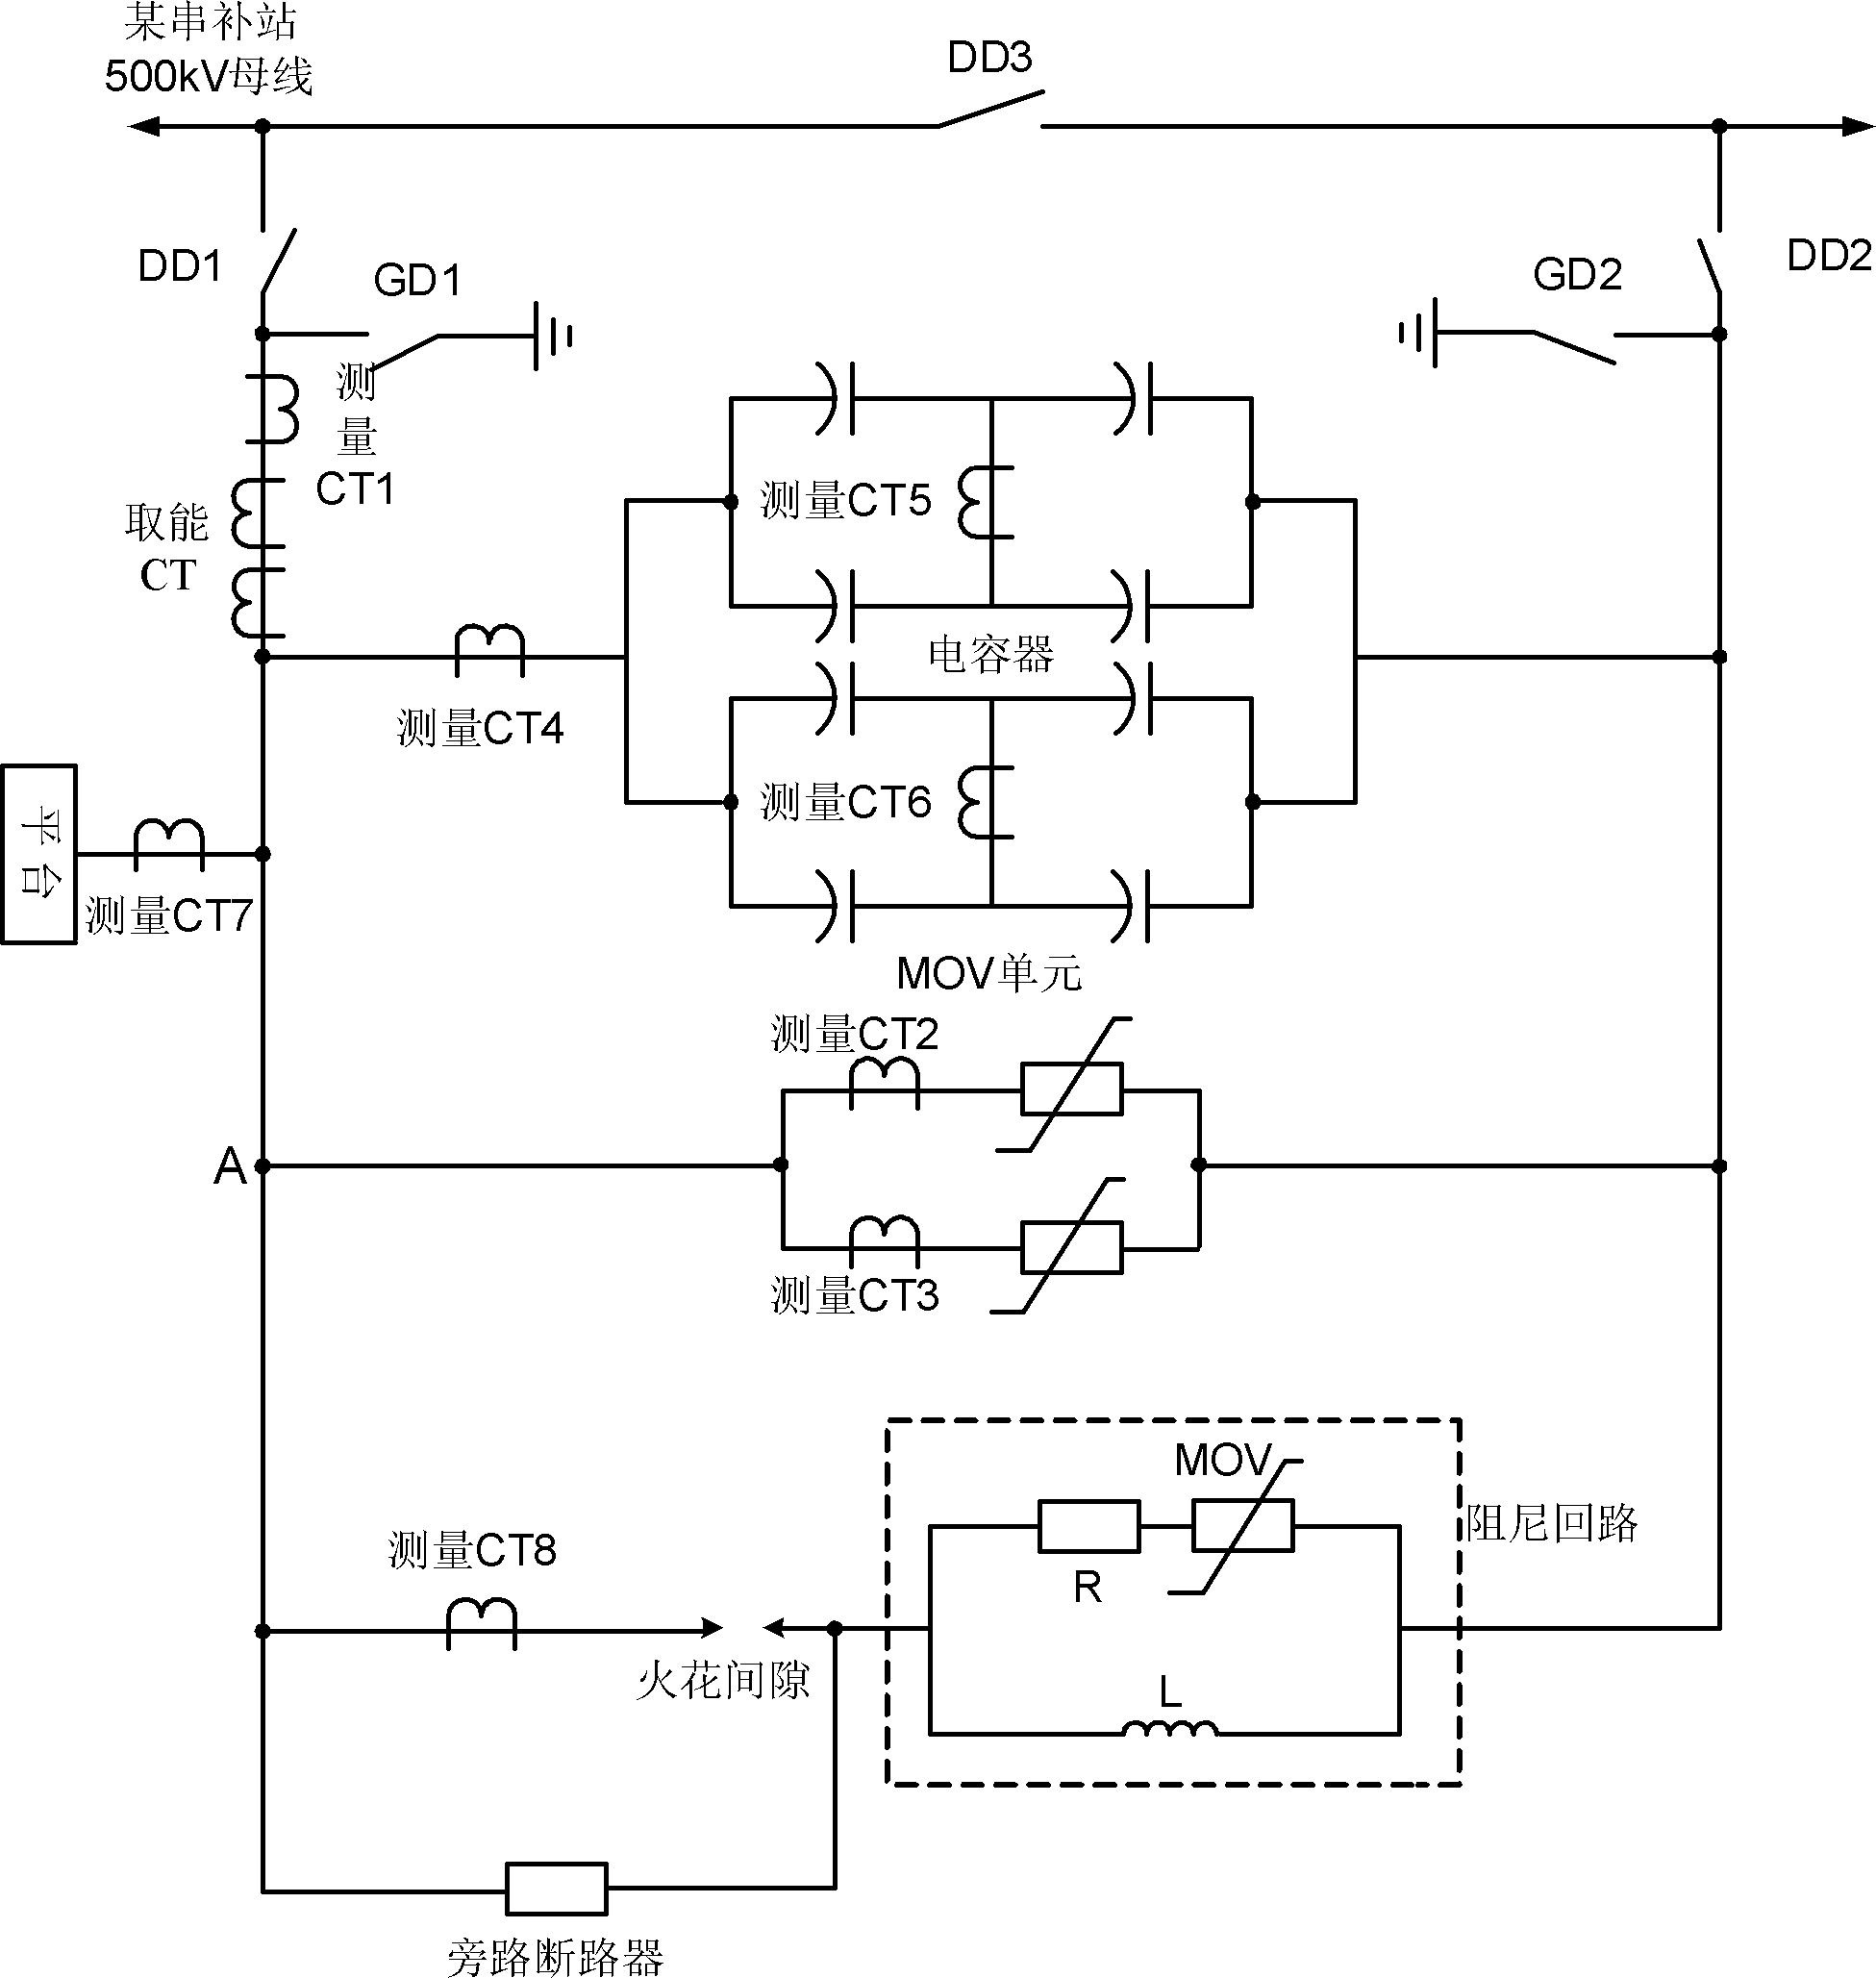 Capacitor platform for series compensator